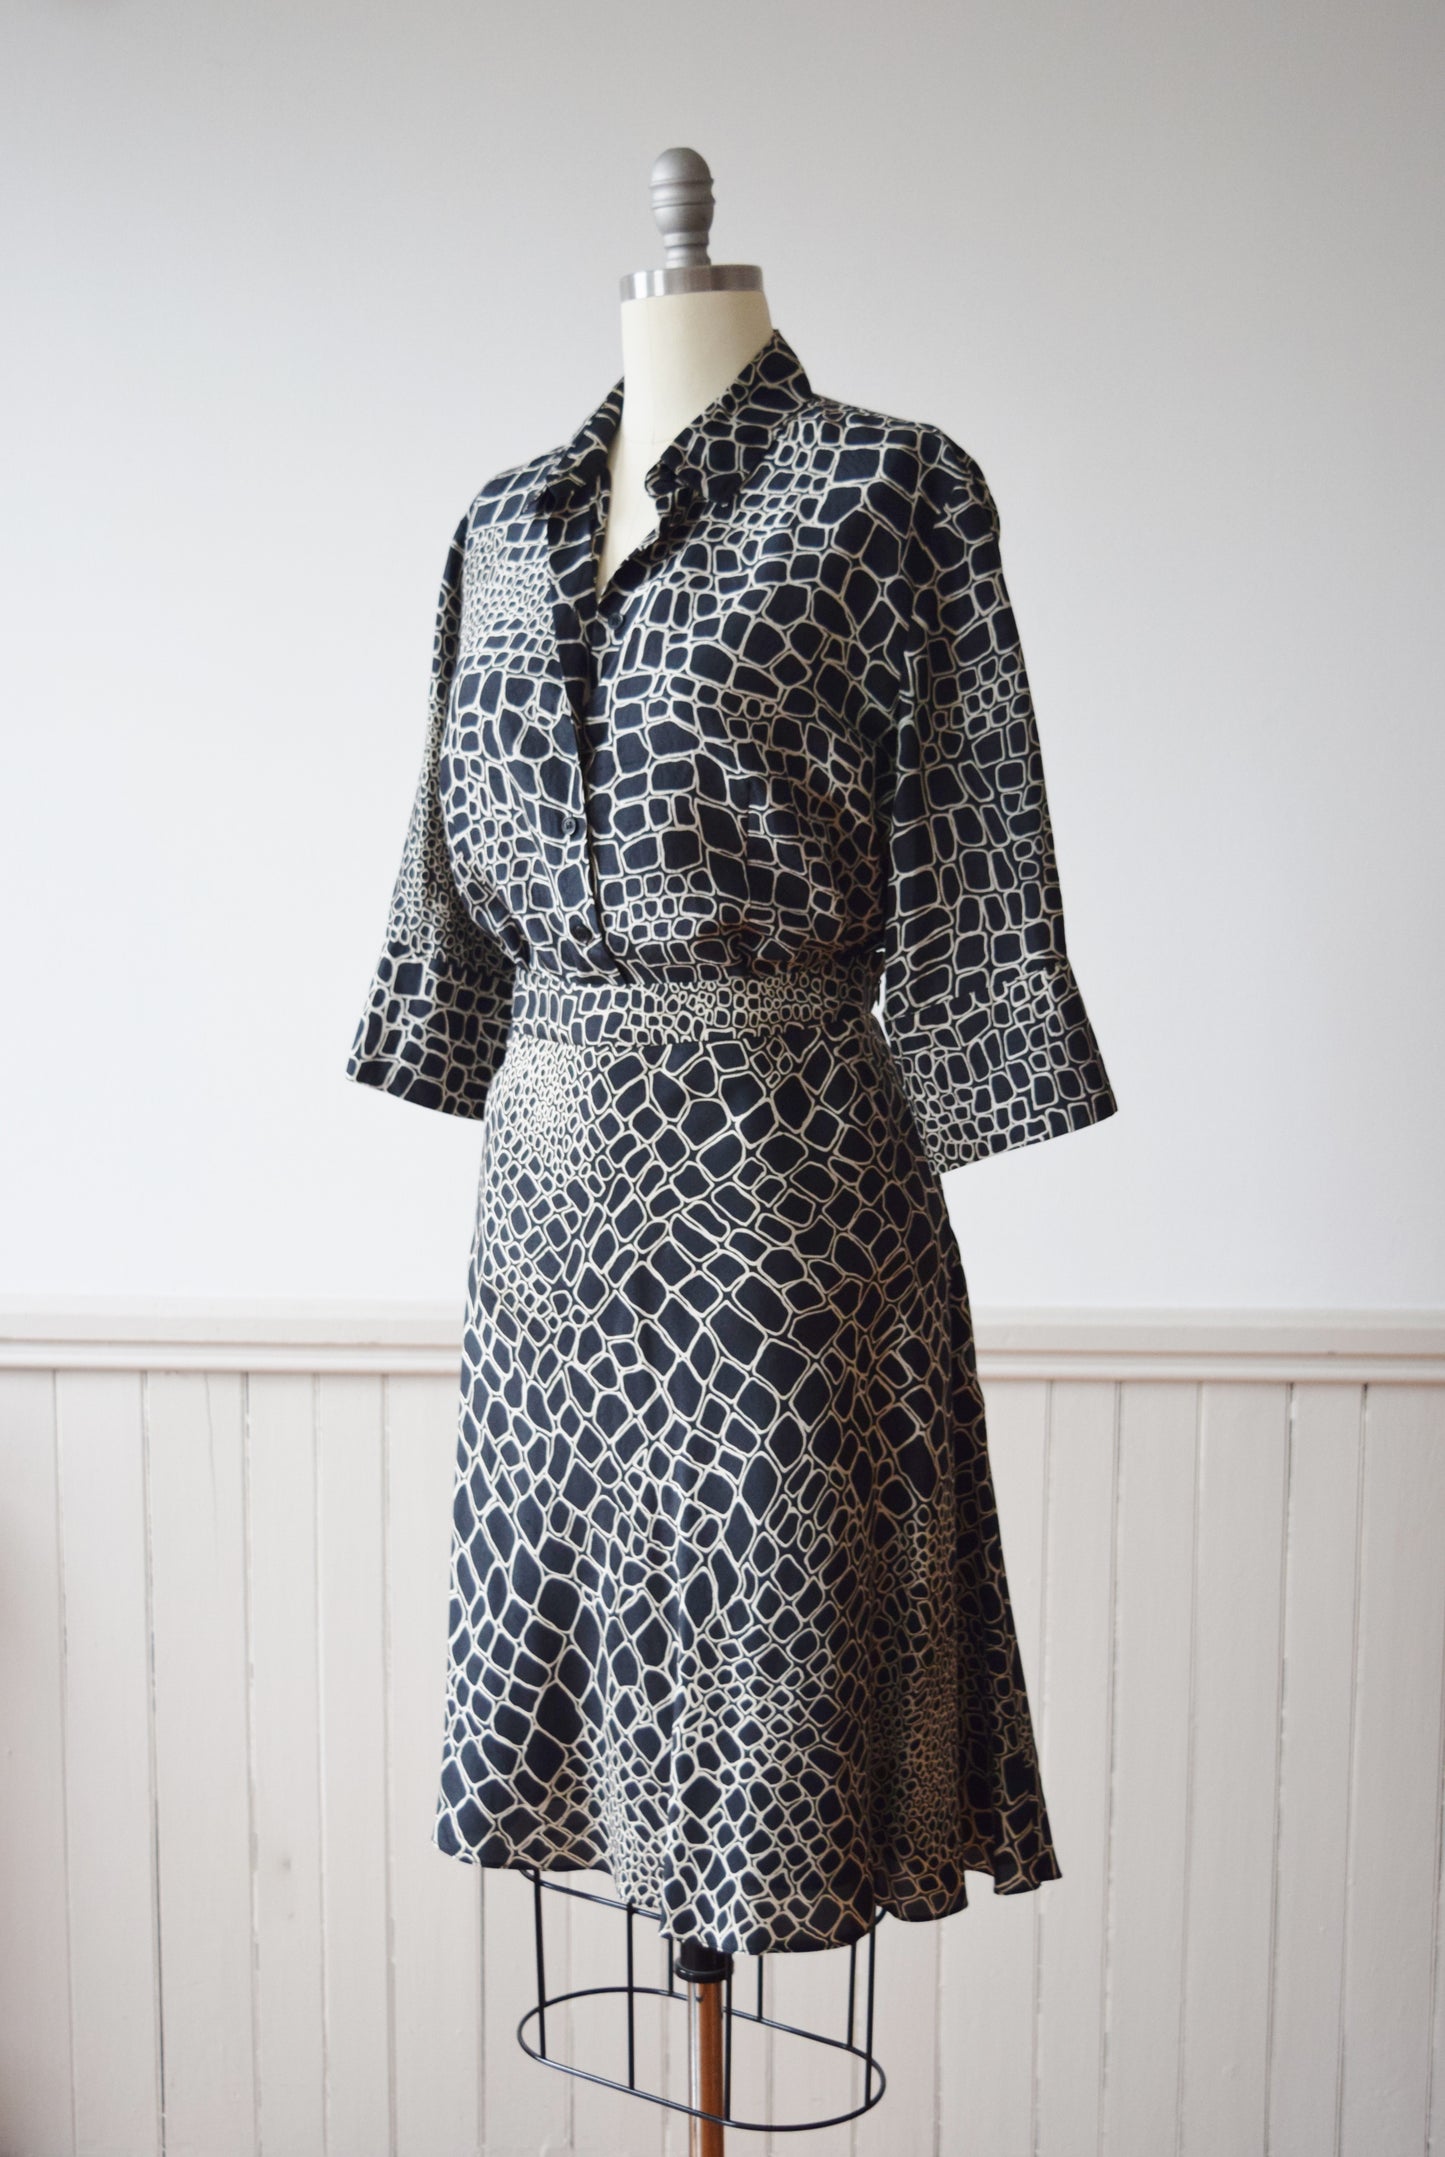 Les Copains Silk Dress Set | 1990s Vintage Les Copains Blouse and Skirt | L